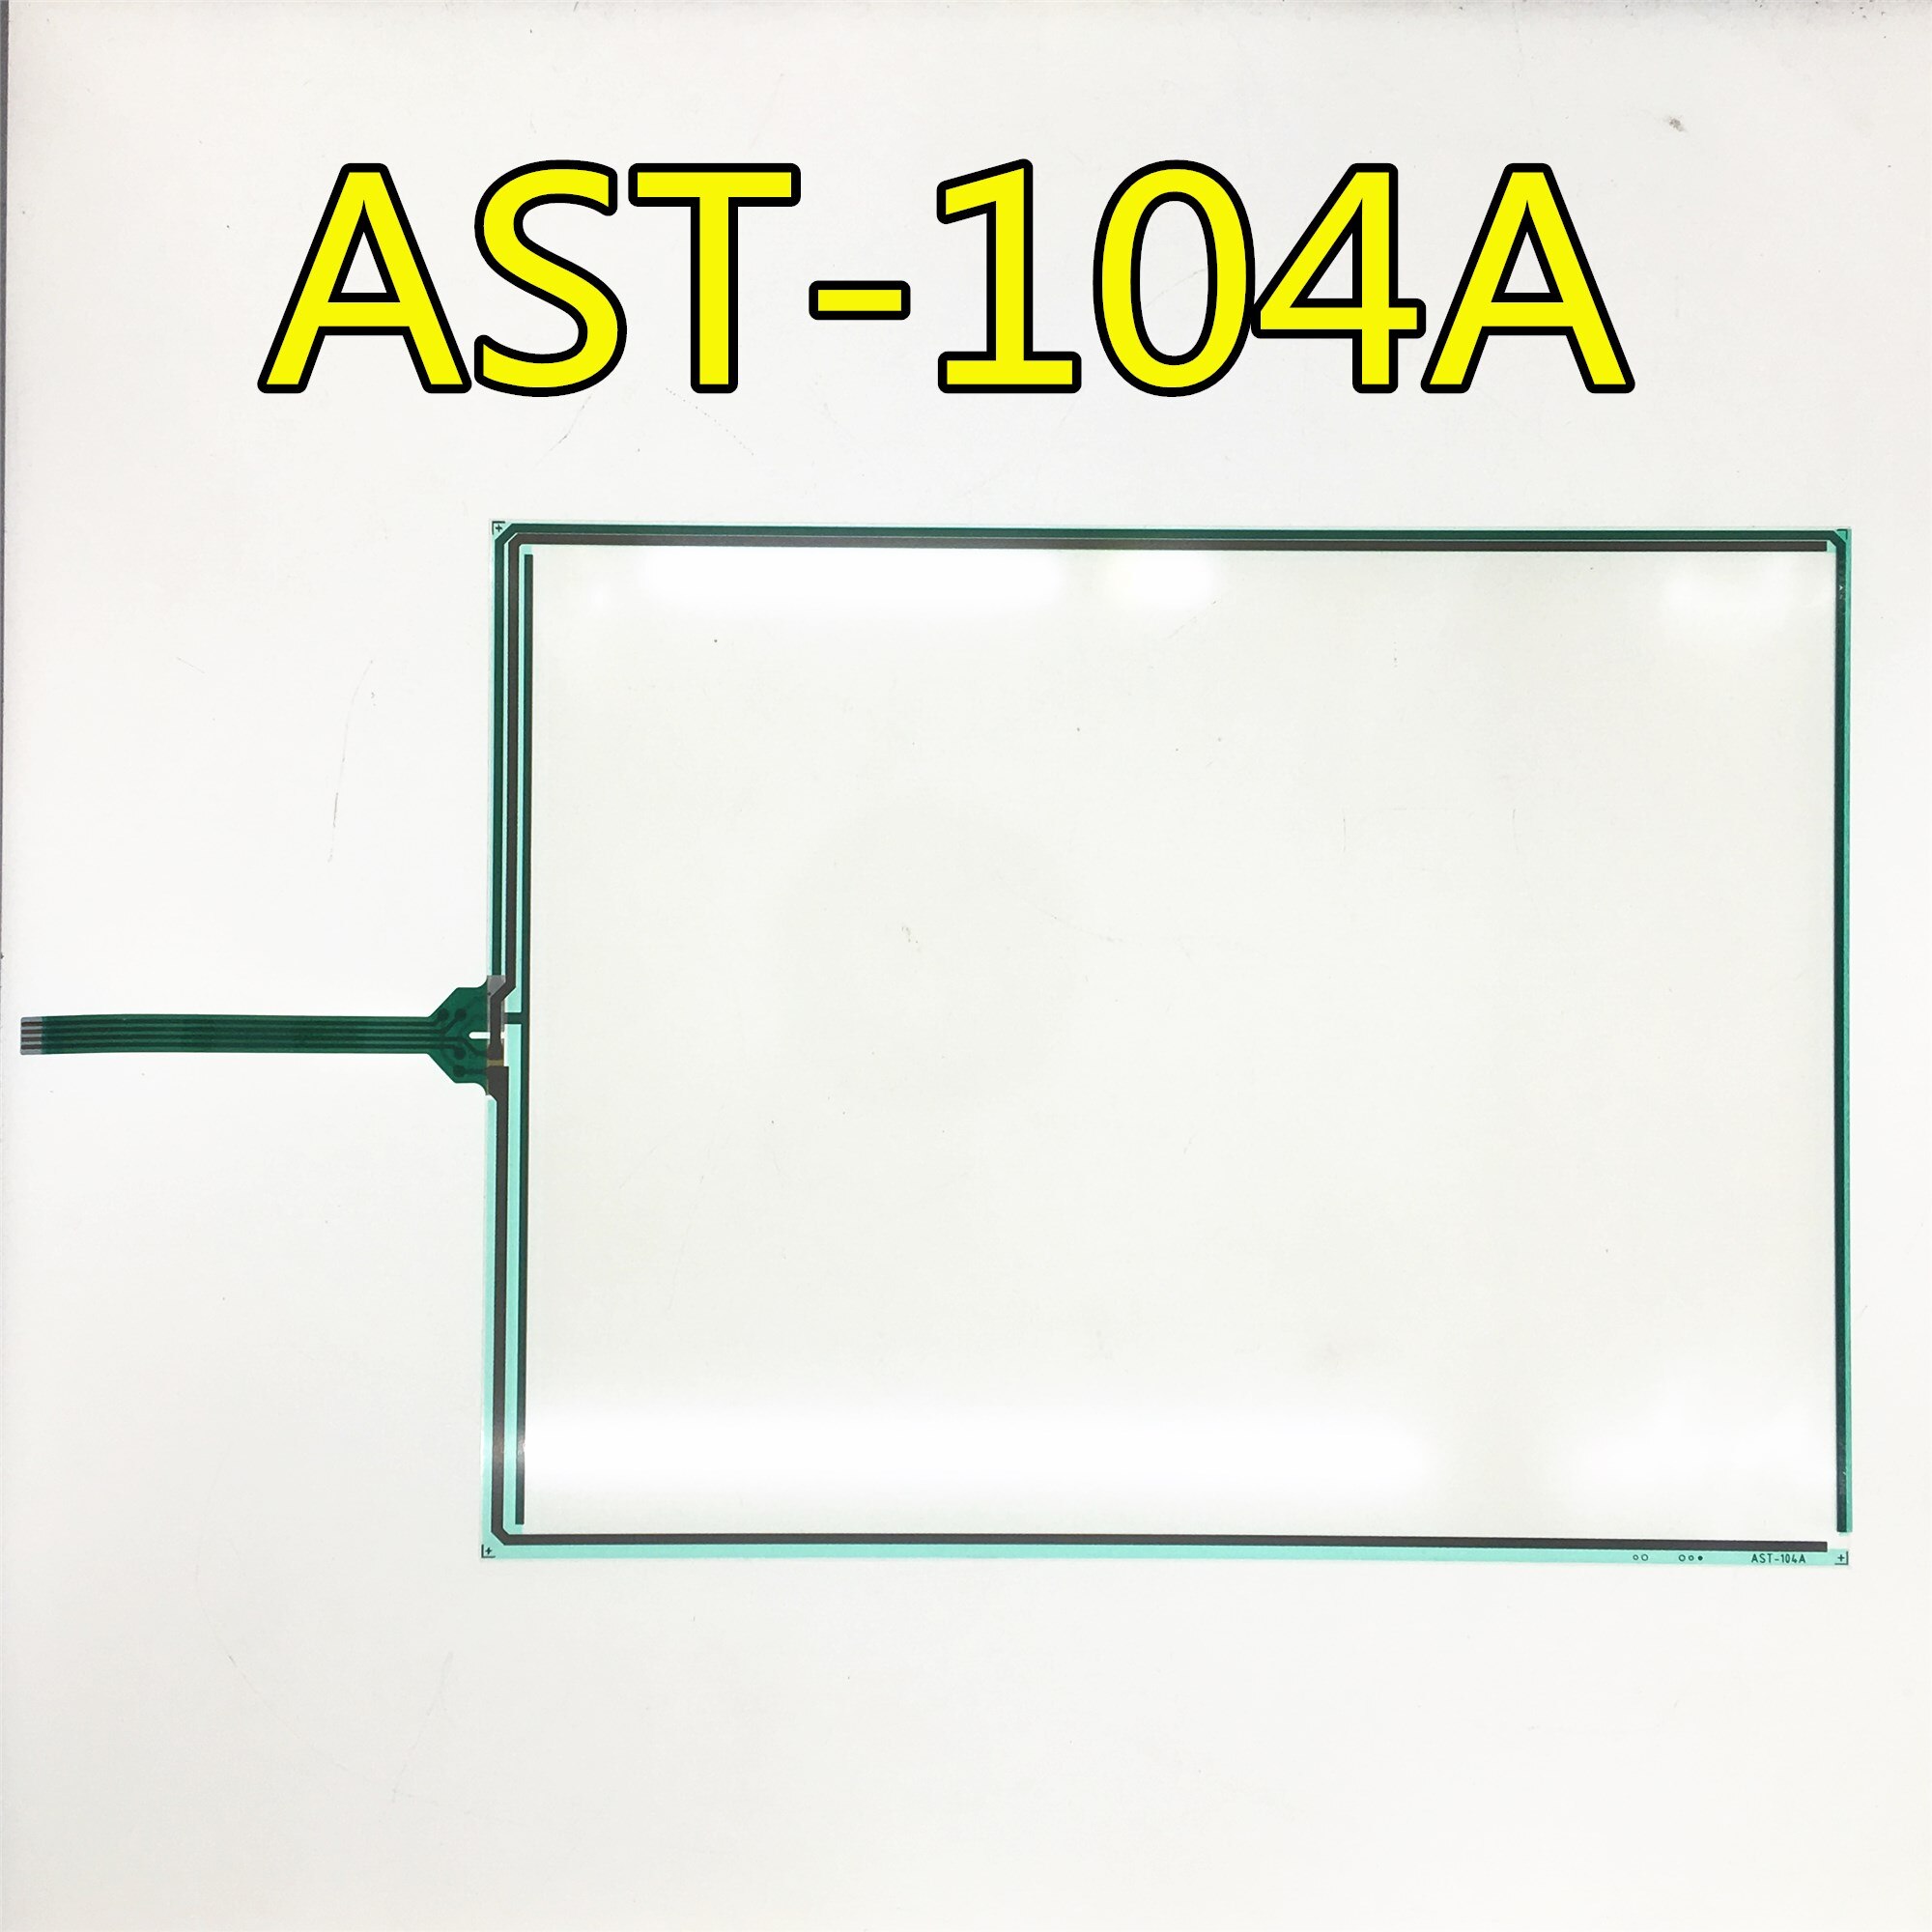 AST-104A AST-104A080A ο ġ, 1  